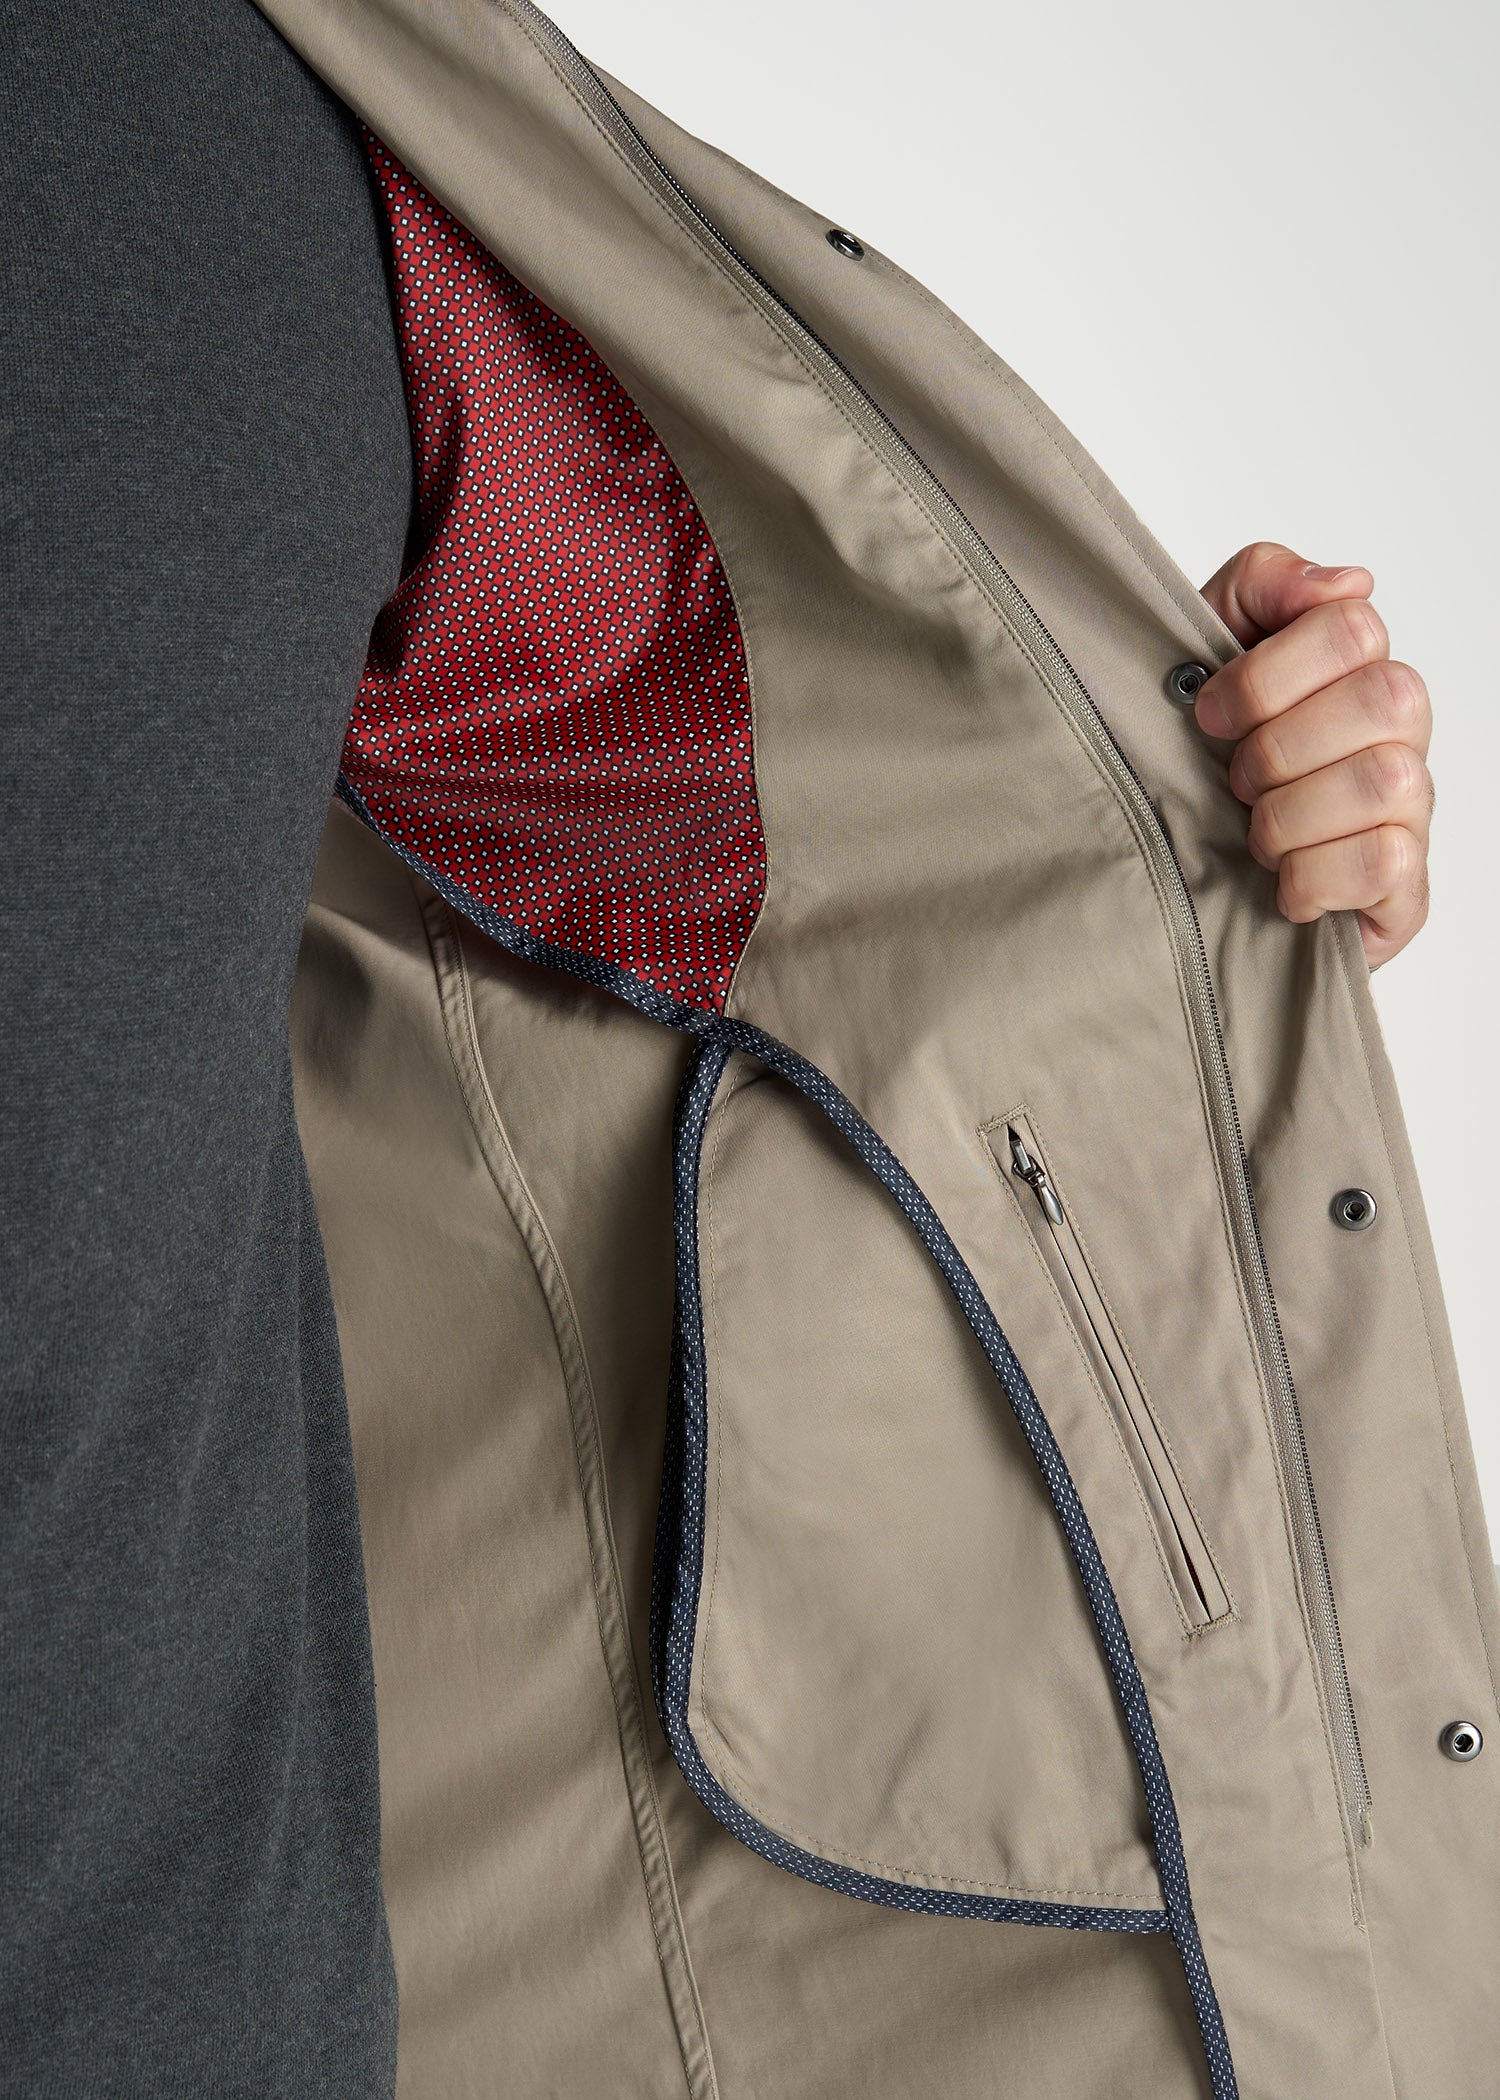 Shop Men's Jackets, Outerwear & Coats